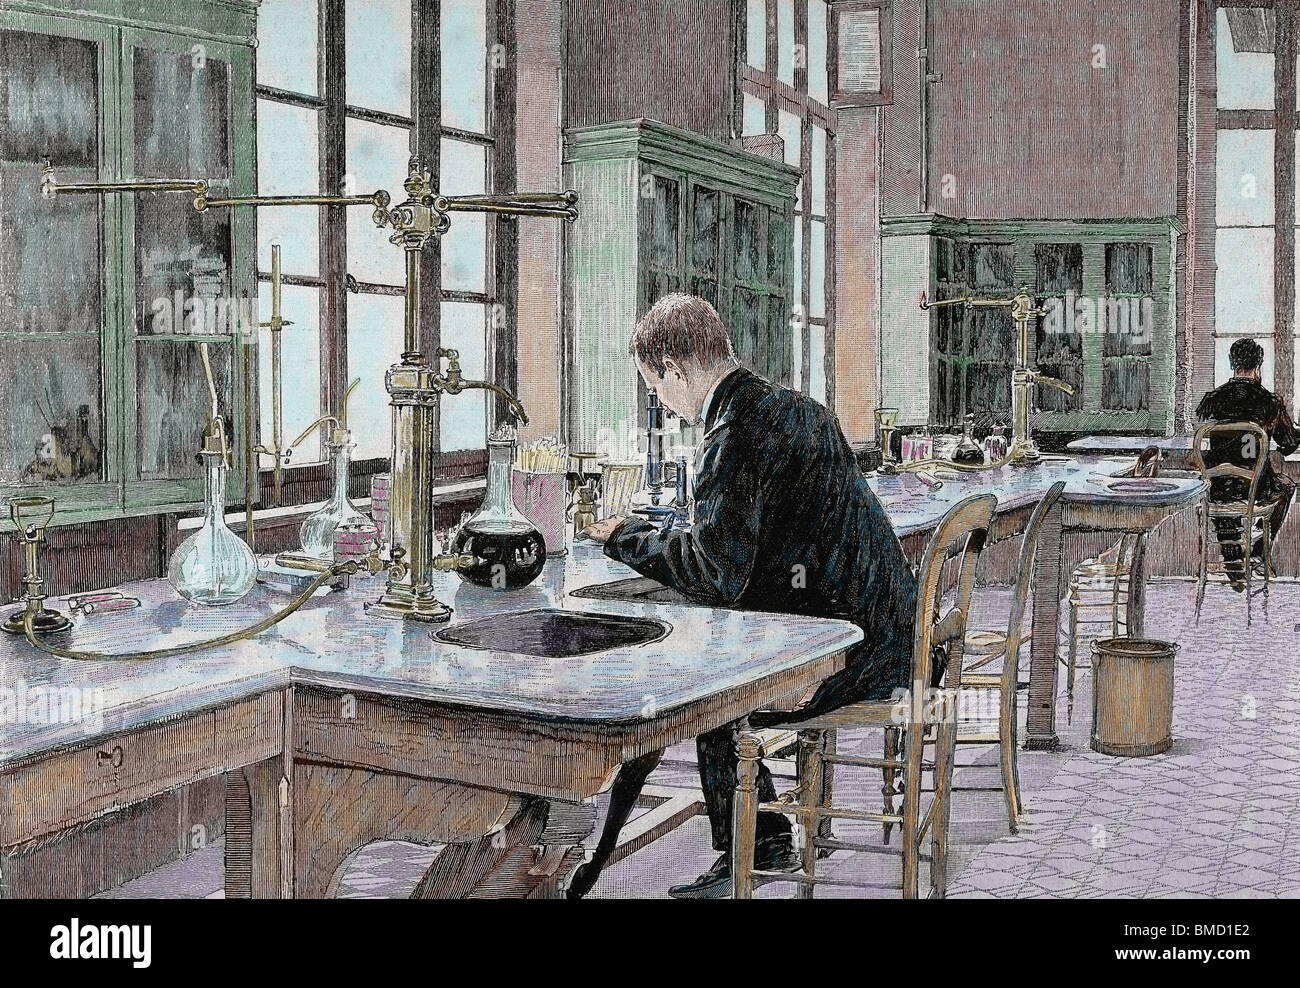 PASTEUR, Louis (1822-1895), französischer Chemiker und Bakteriologe. Studium der Mikroben im Institut Pasteur. Gravur. Stockfoto